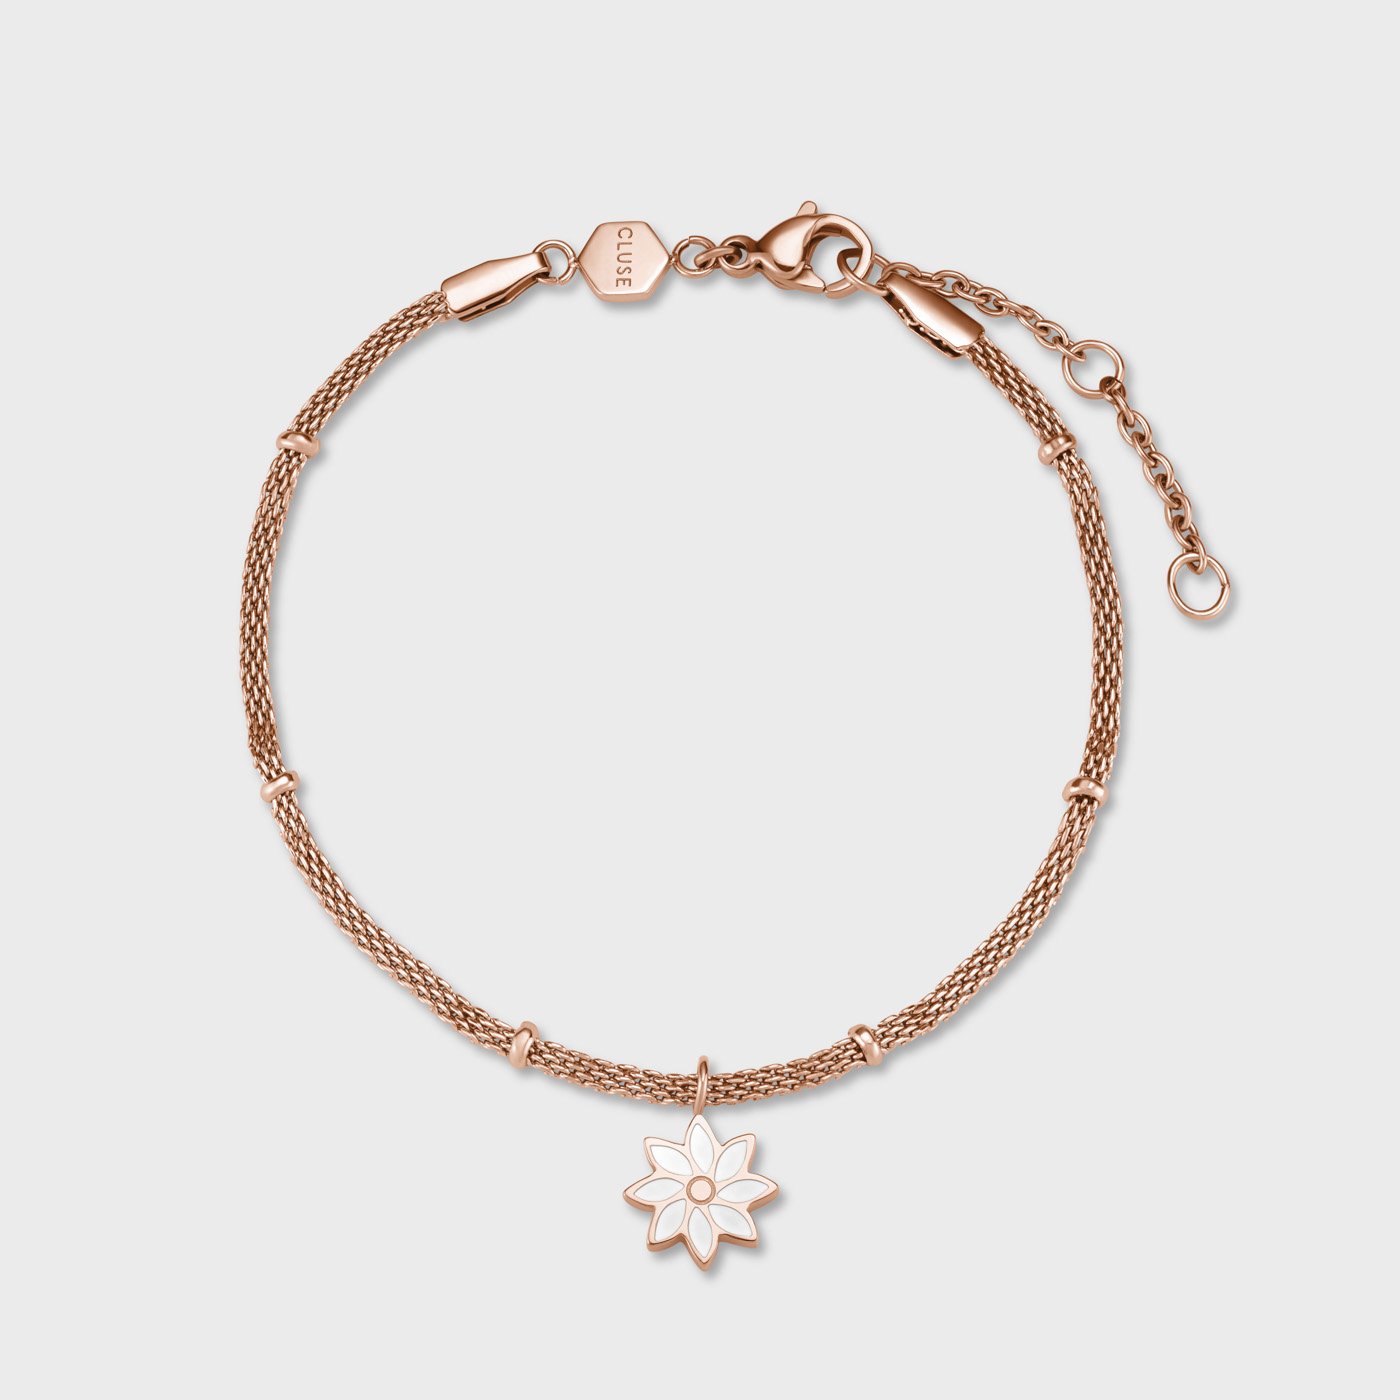 Daisy Garden Bracelet – Low Tide Island Design